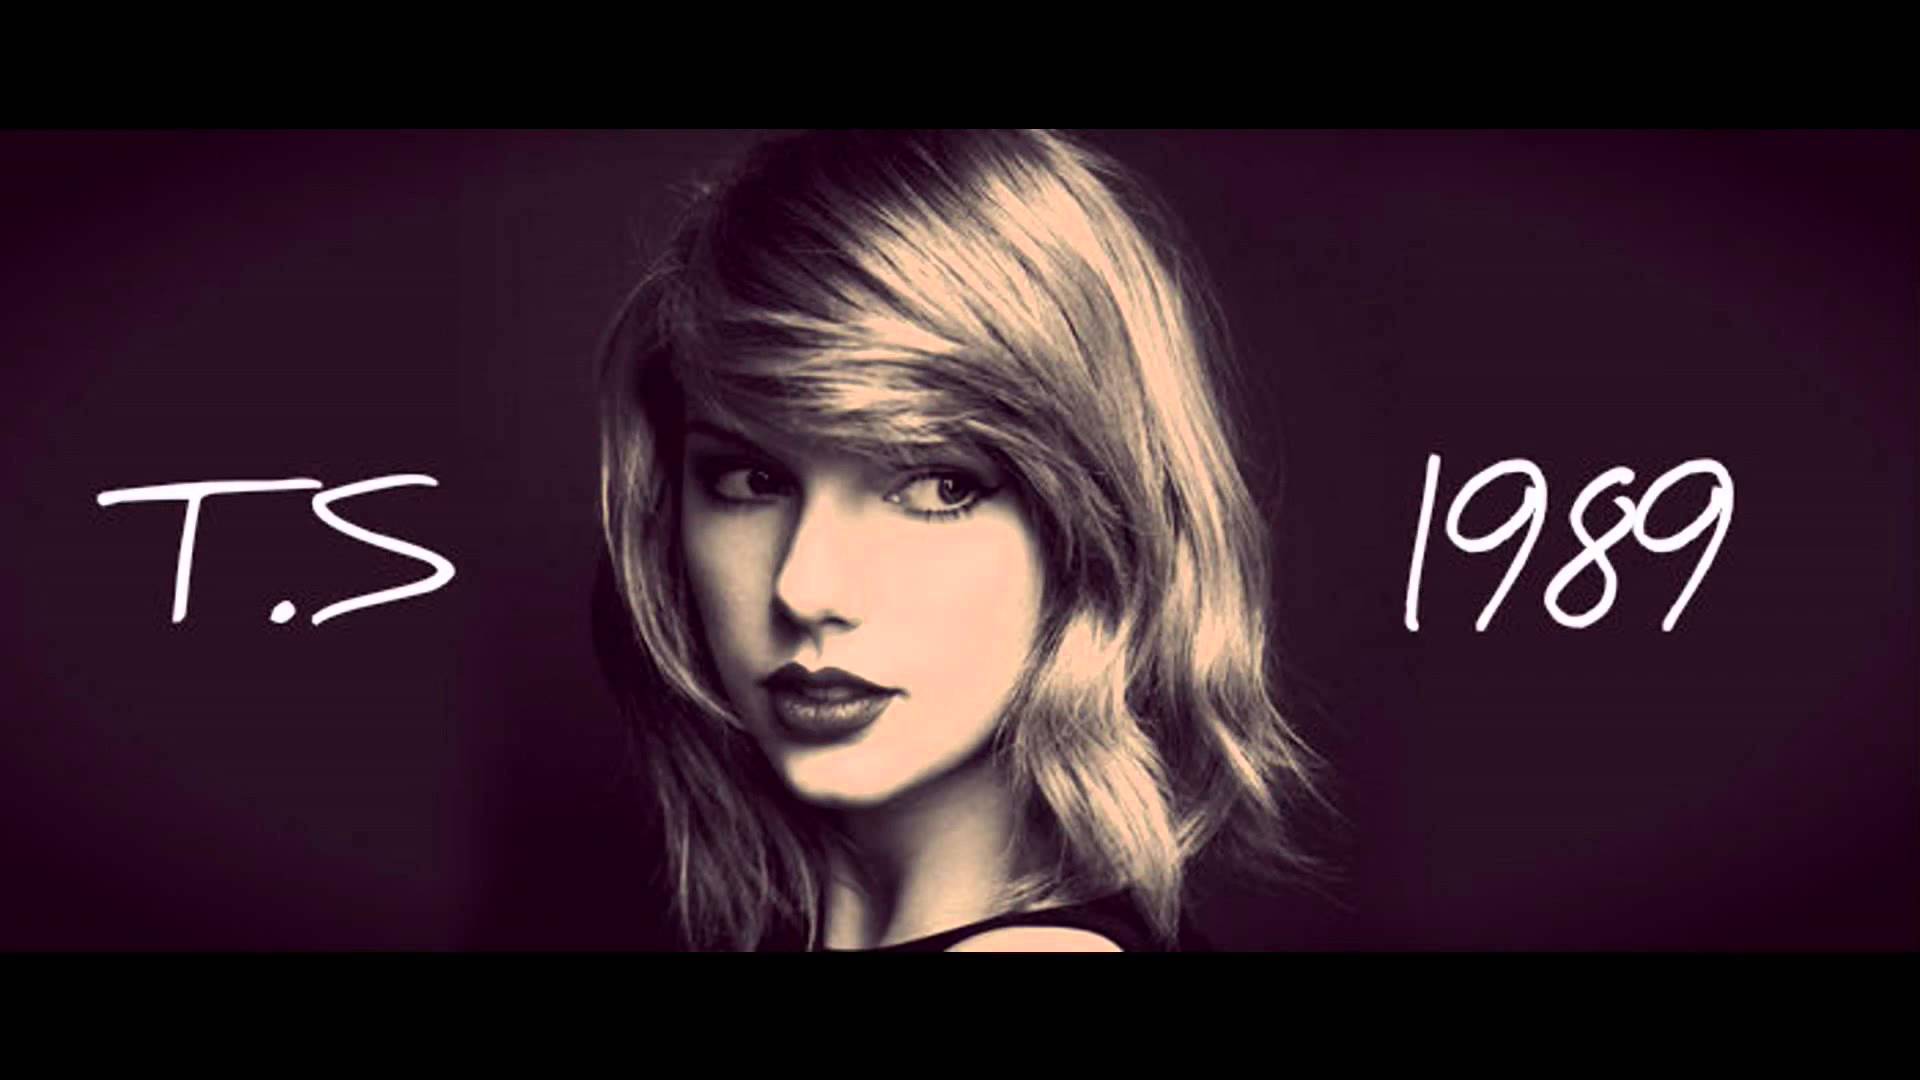 1989: tour diễn ấn tượng nhất của Taylor Swift